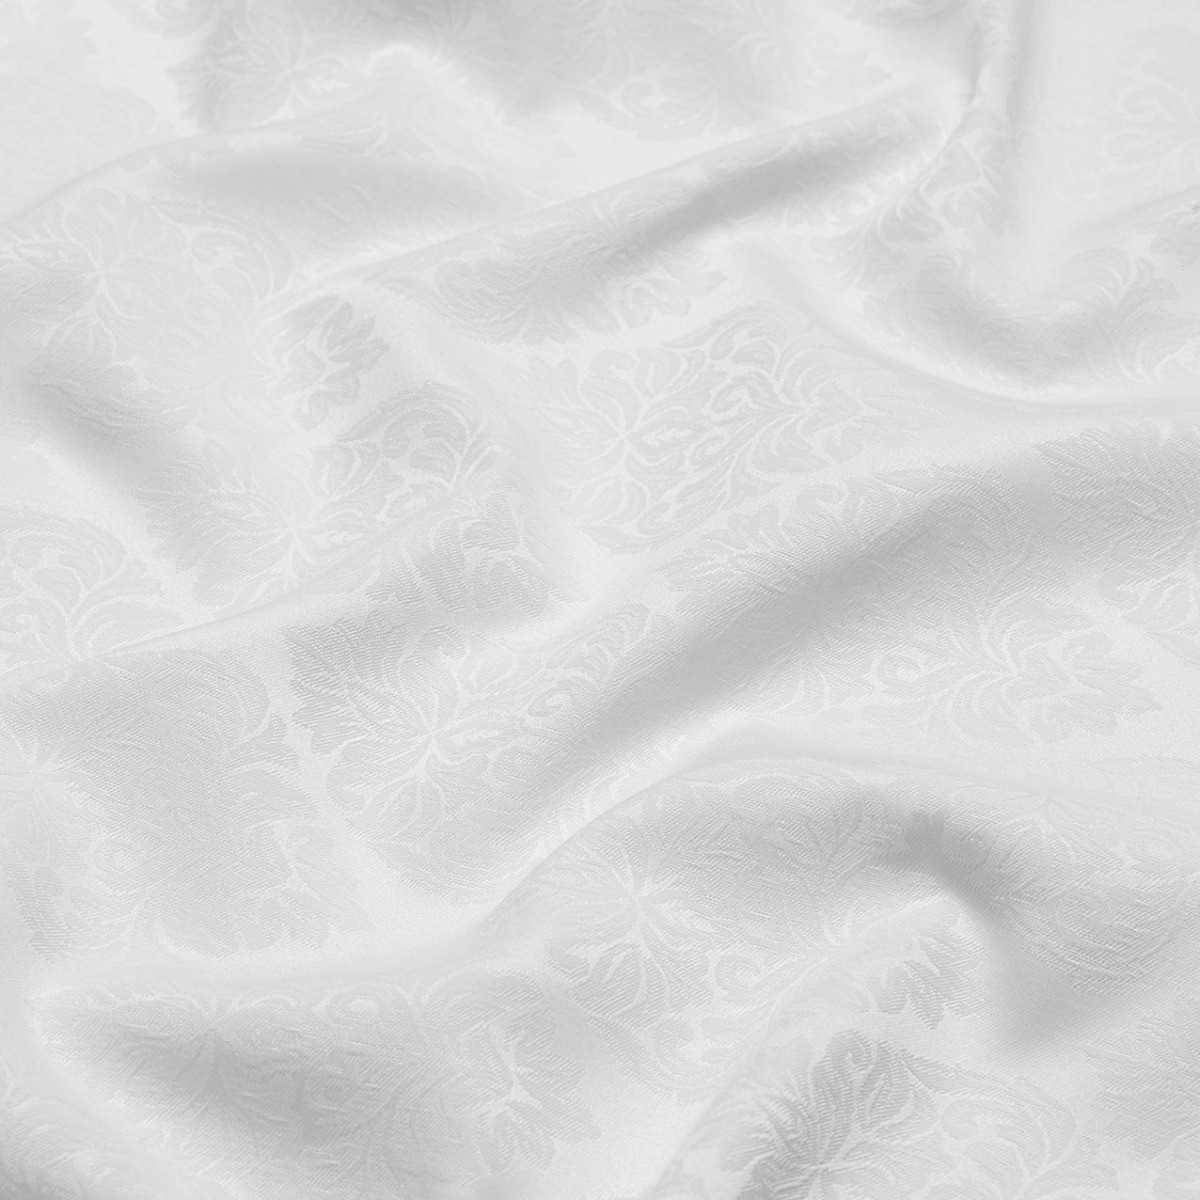  Ткань для скатертей OPHELIA WHITE, ширина 277 см  - Фото